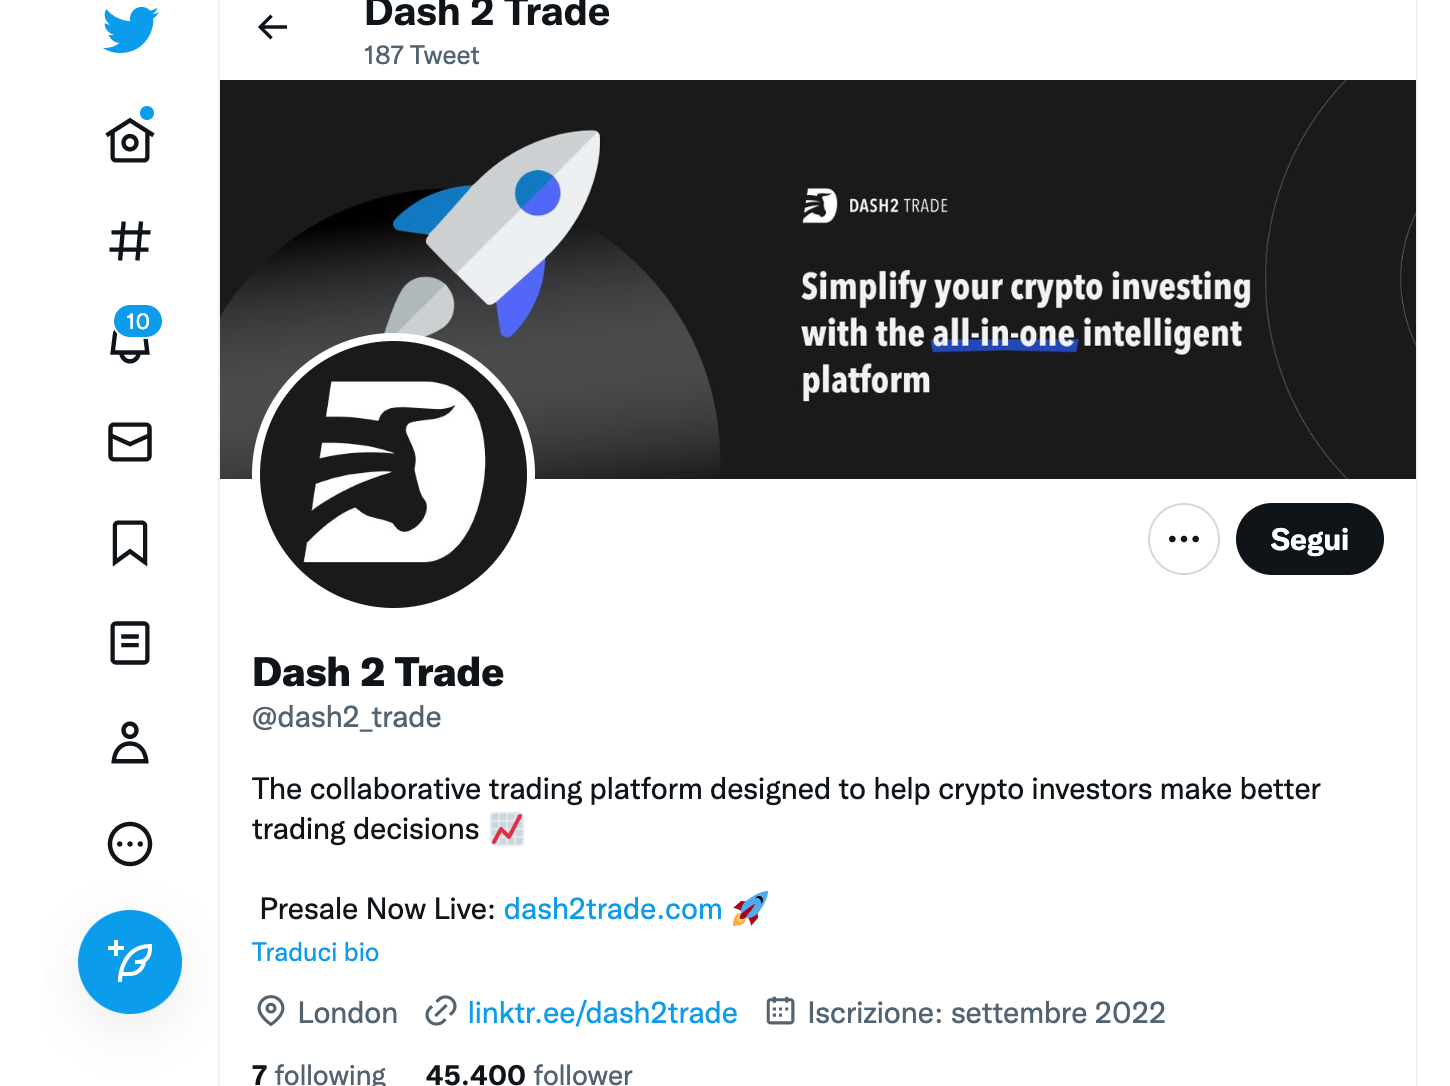 Pagina Twitter Dash 2 Trade, meme coin di segnali crypto